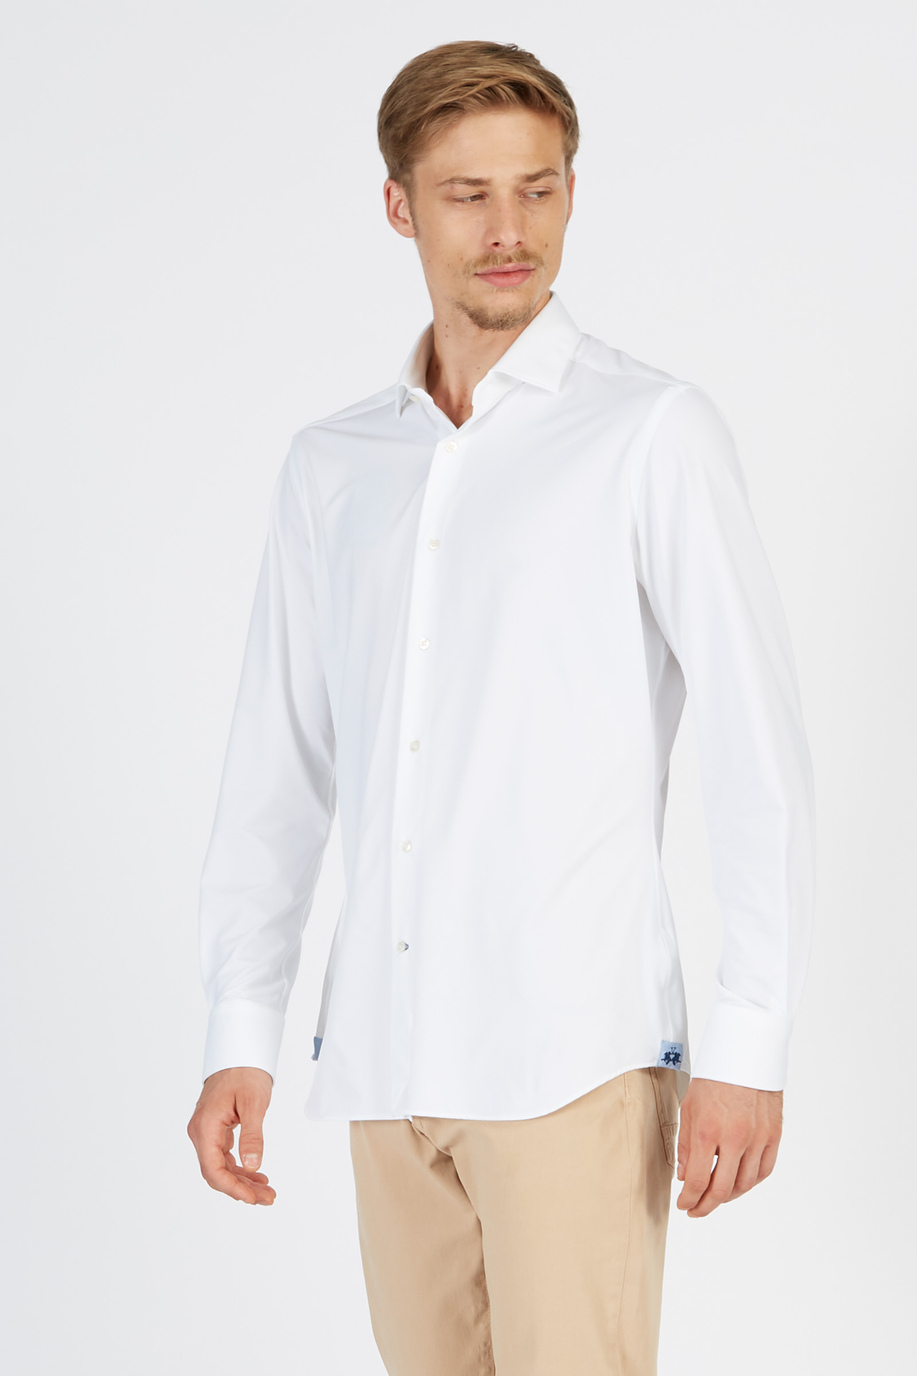 Blue Ribbon-Herrenhemd aus Baumwolljersey und langen Ärmeln im klassischen Schnitt - Hemden | La Martina - Official Online Shop